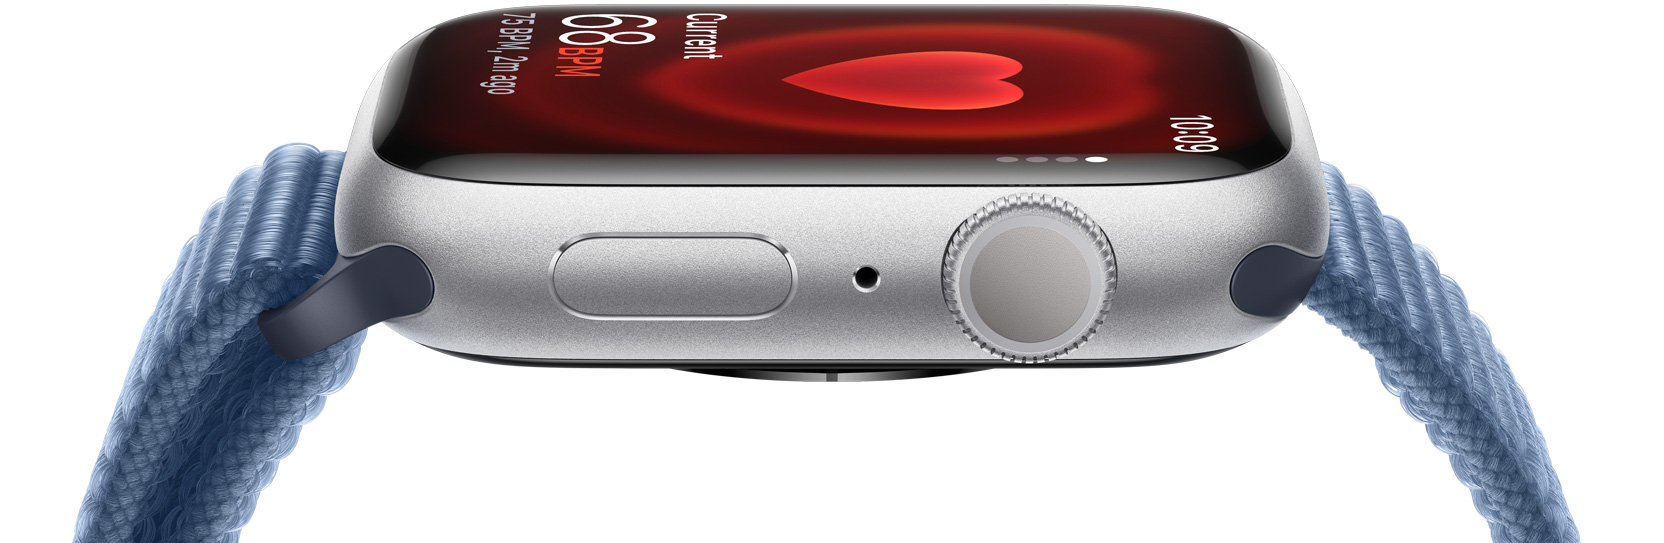 Tampak samping Apple Watch yang menunjukkan detak jantung pengguna.